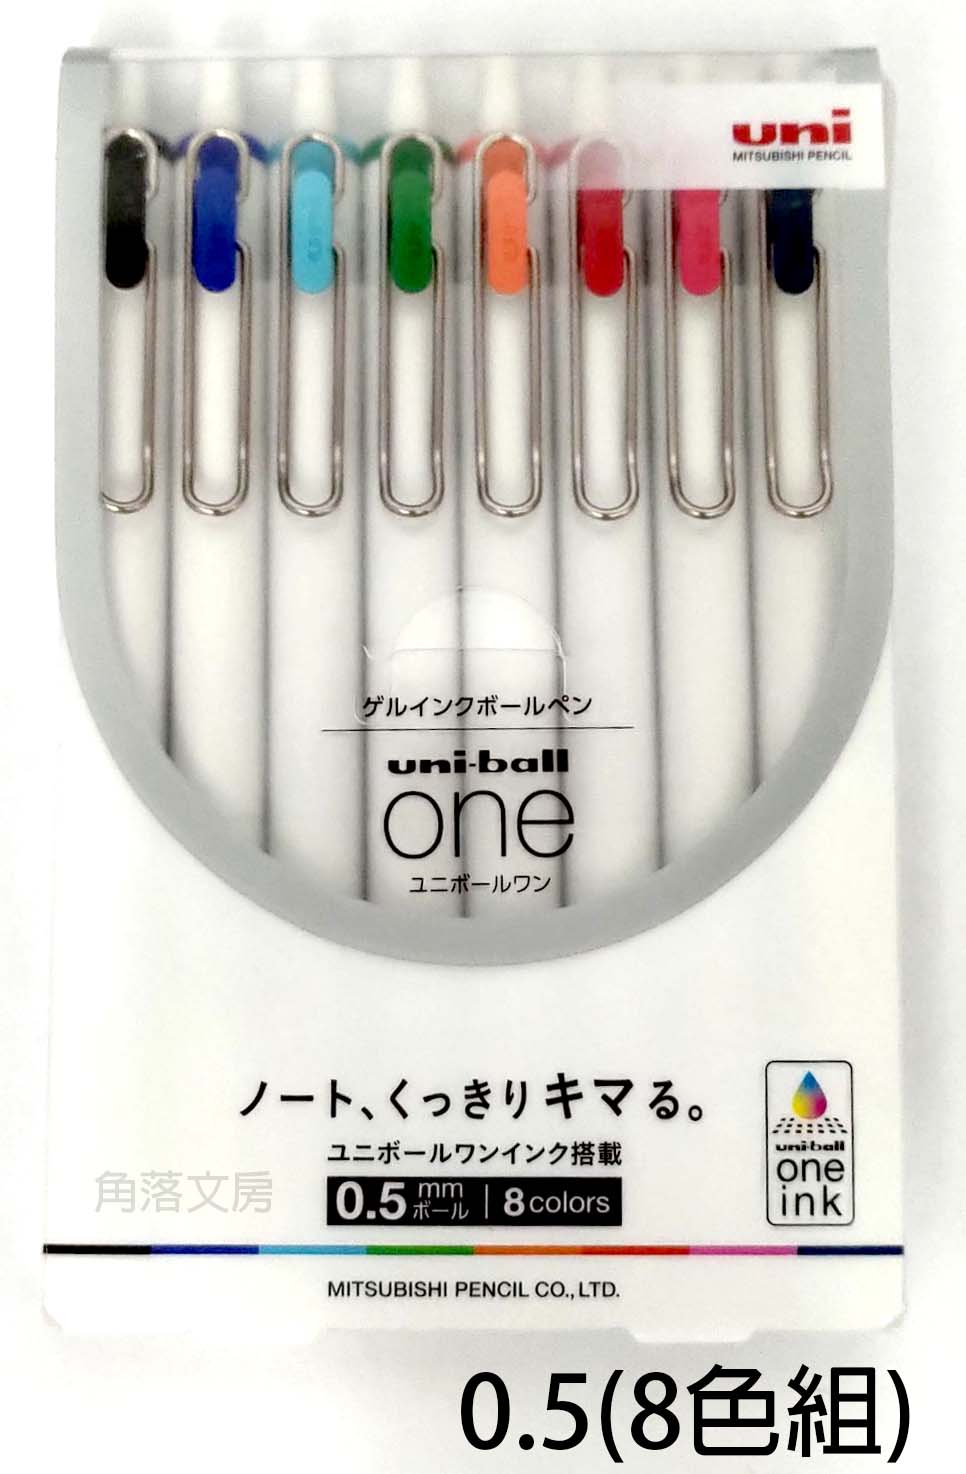 【角落文房】UNI 三菱 uni-ball one UMN-S-05 自動鋼珠筆8色組 0.5mm